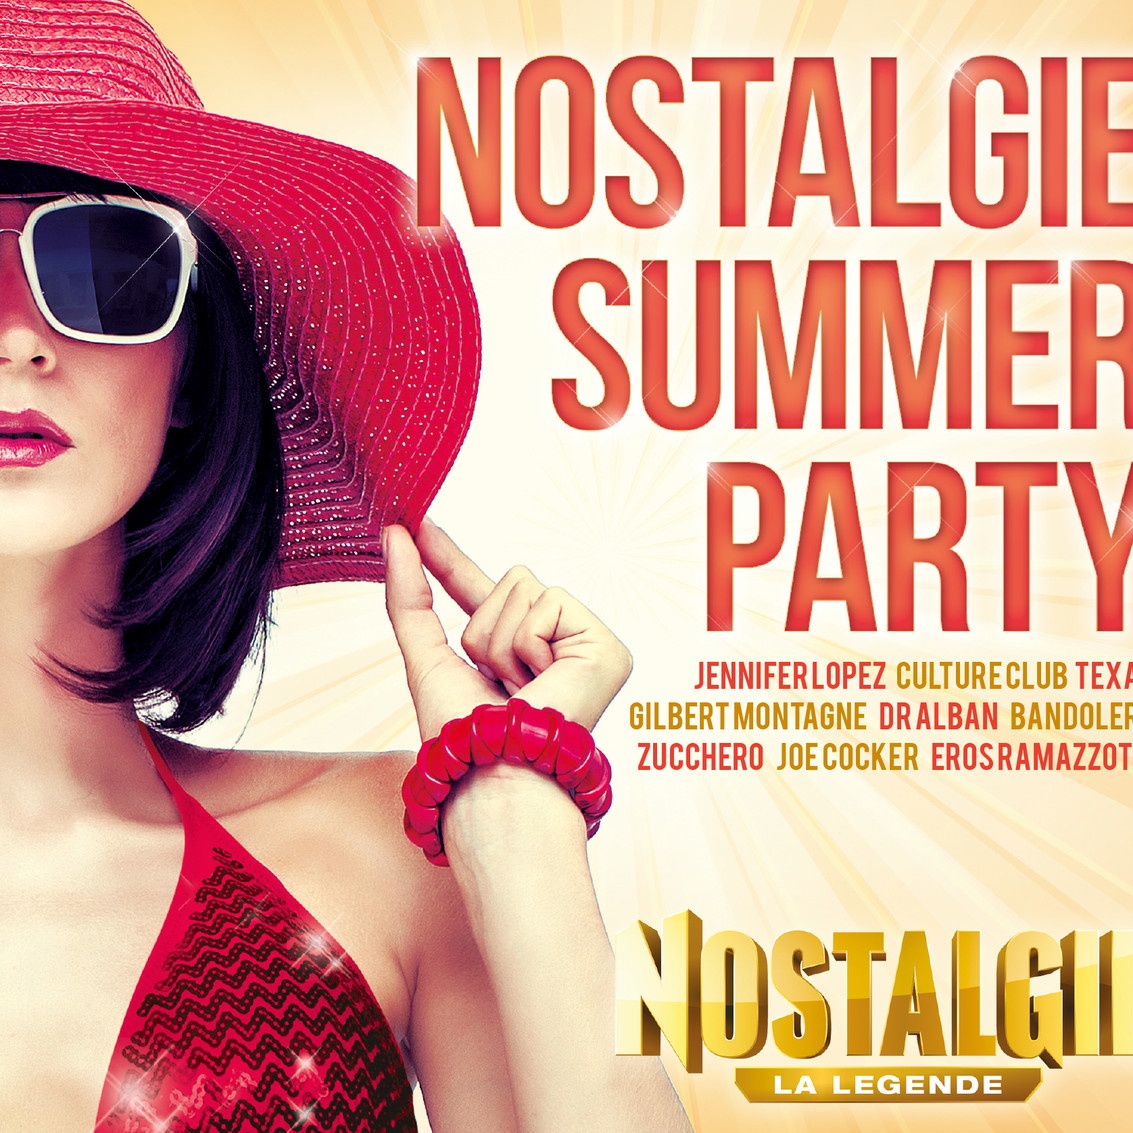 Nostalgie Summer Party 2013